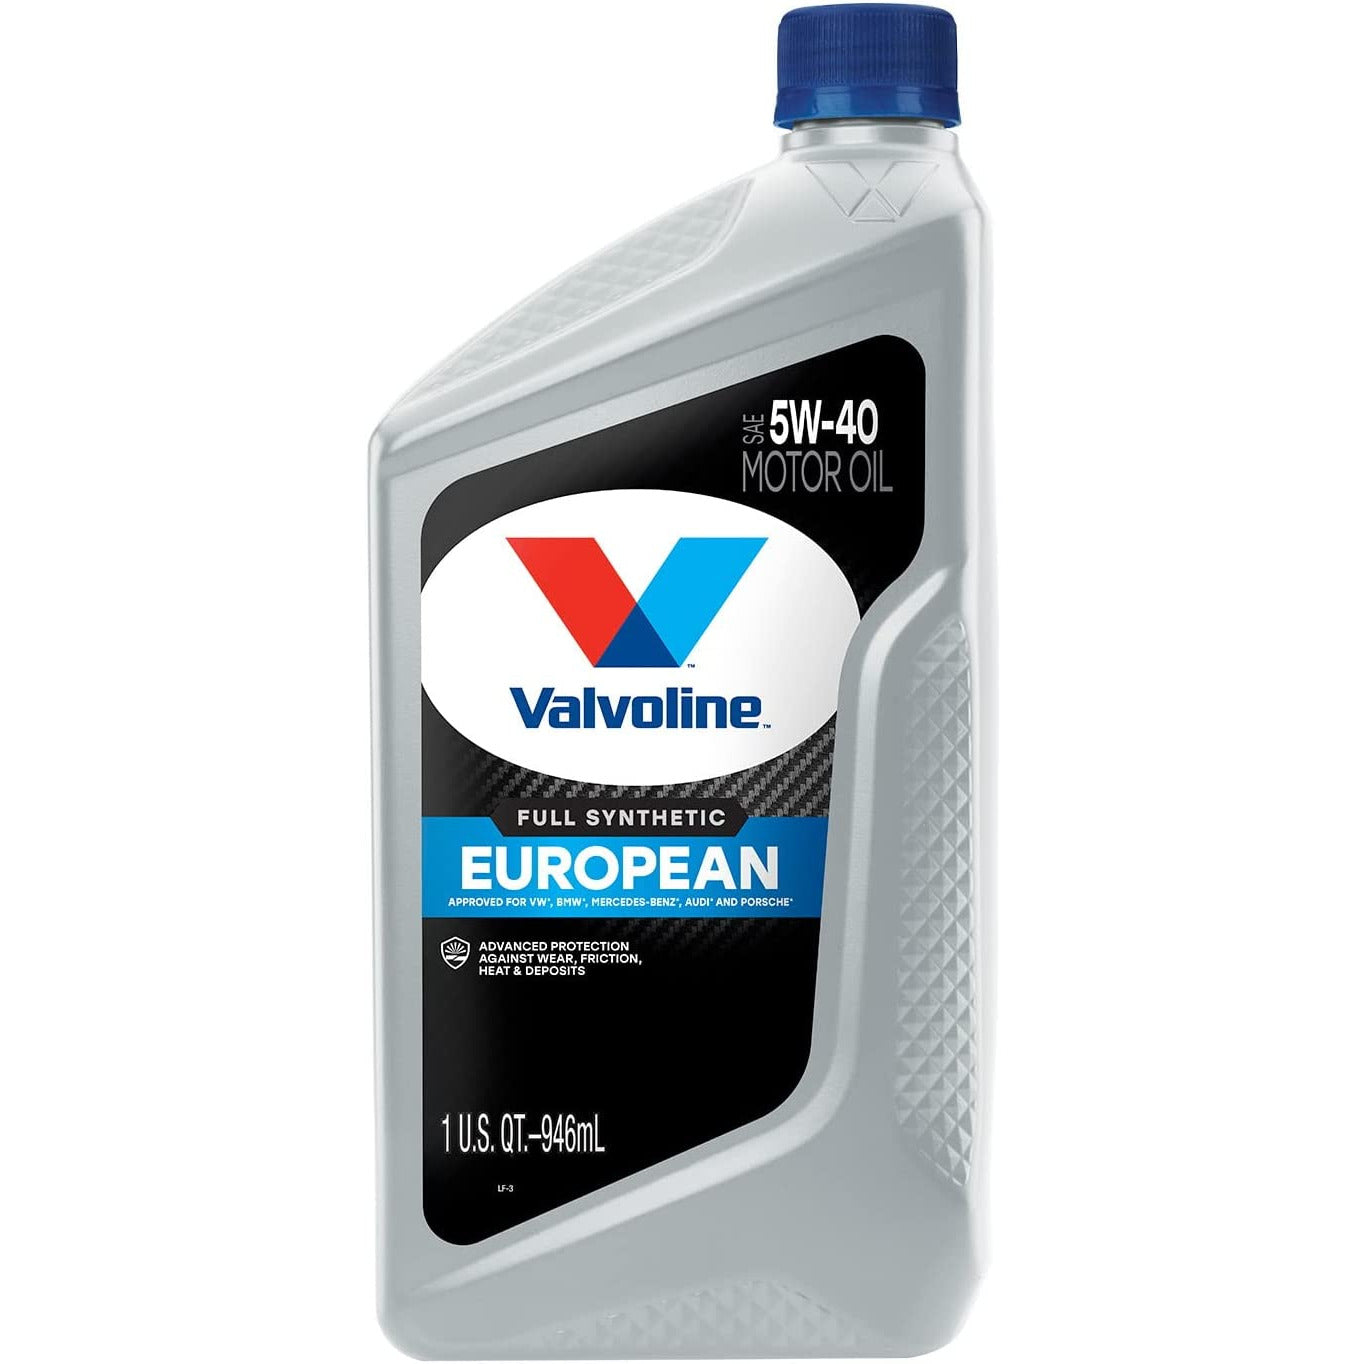 VAL VV966 | Valvoline European Vehicle Full Synthetic 5W-40 Motor Oil : 1 qt